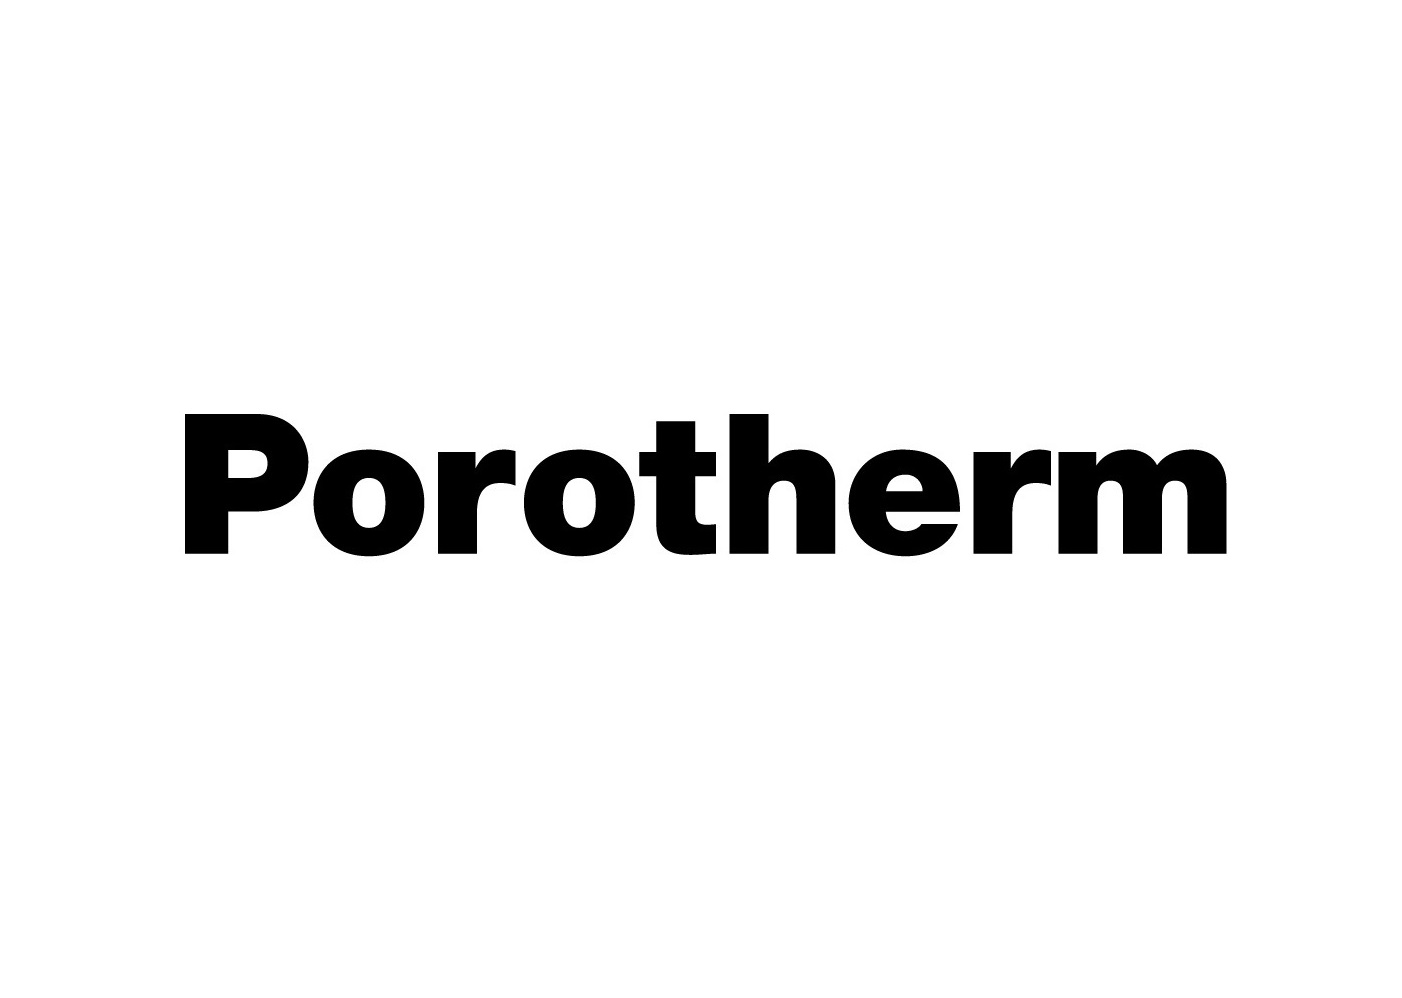 Porotherm